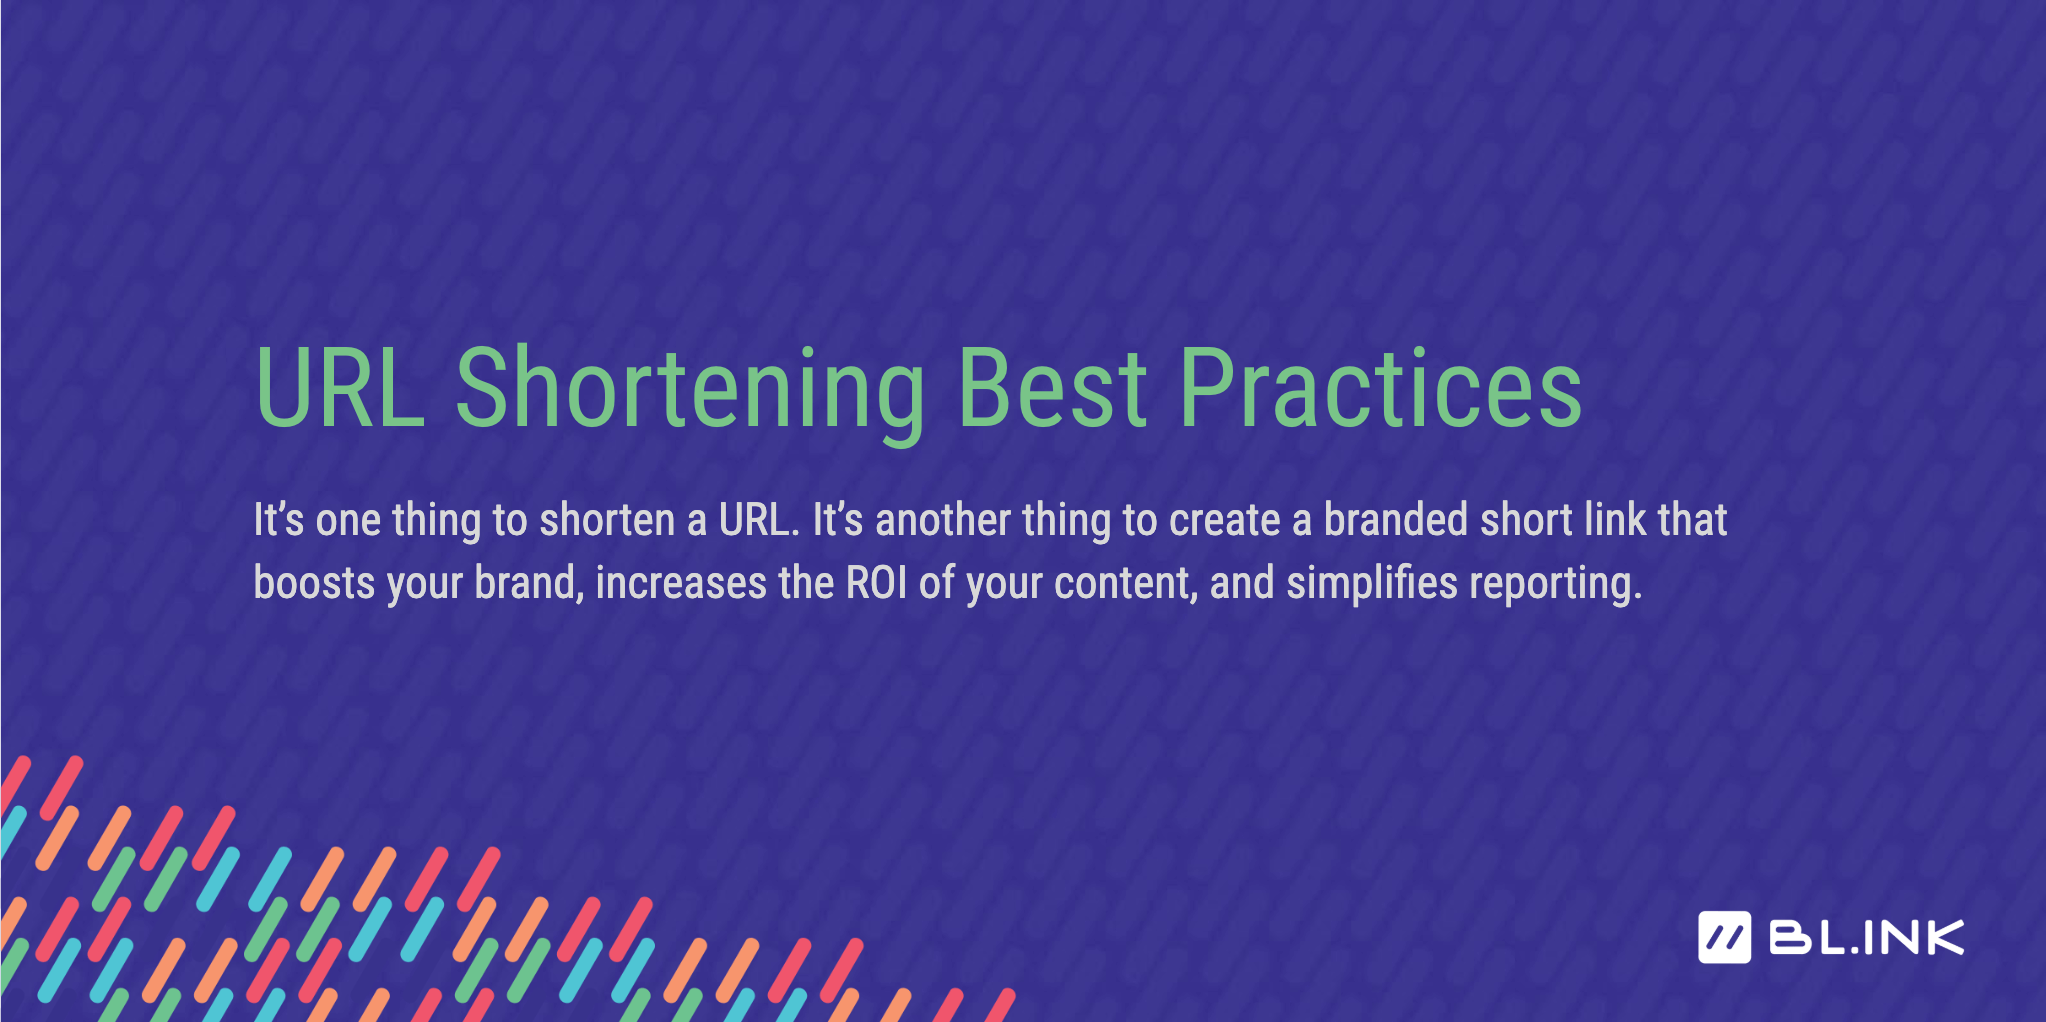 Benefits of URL Shortening